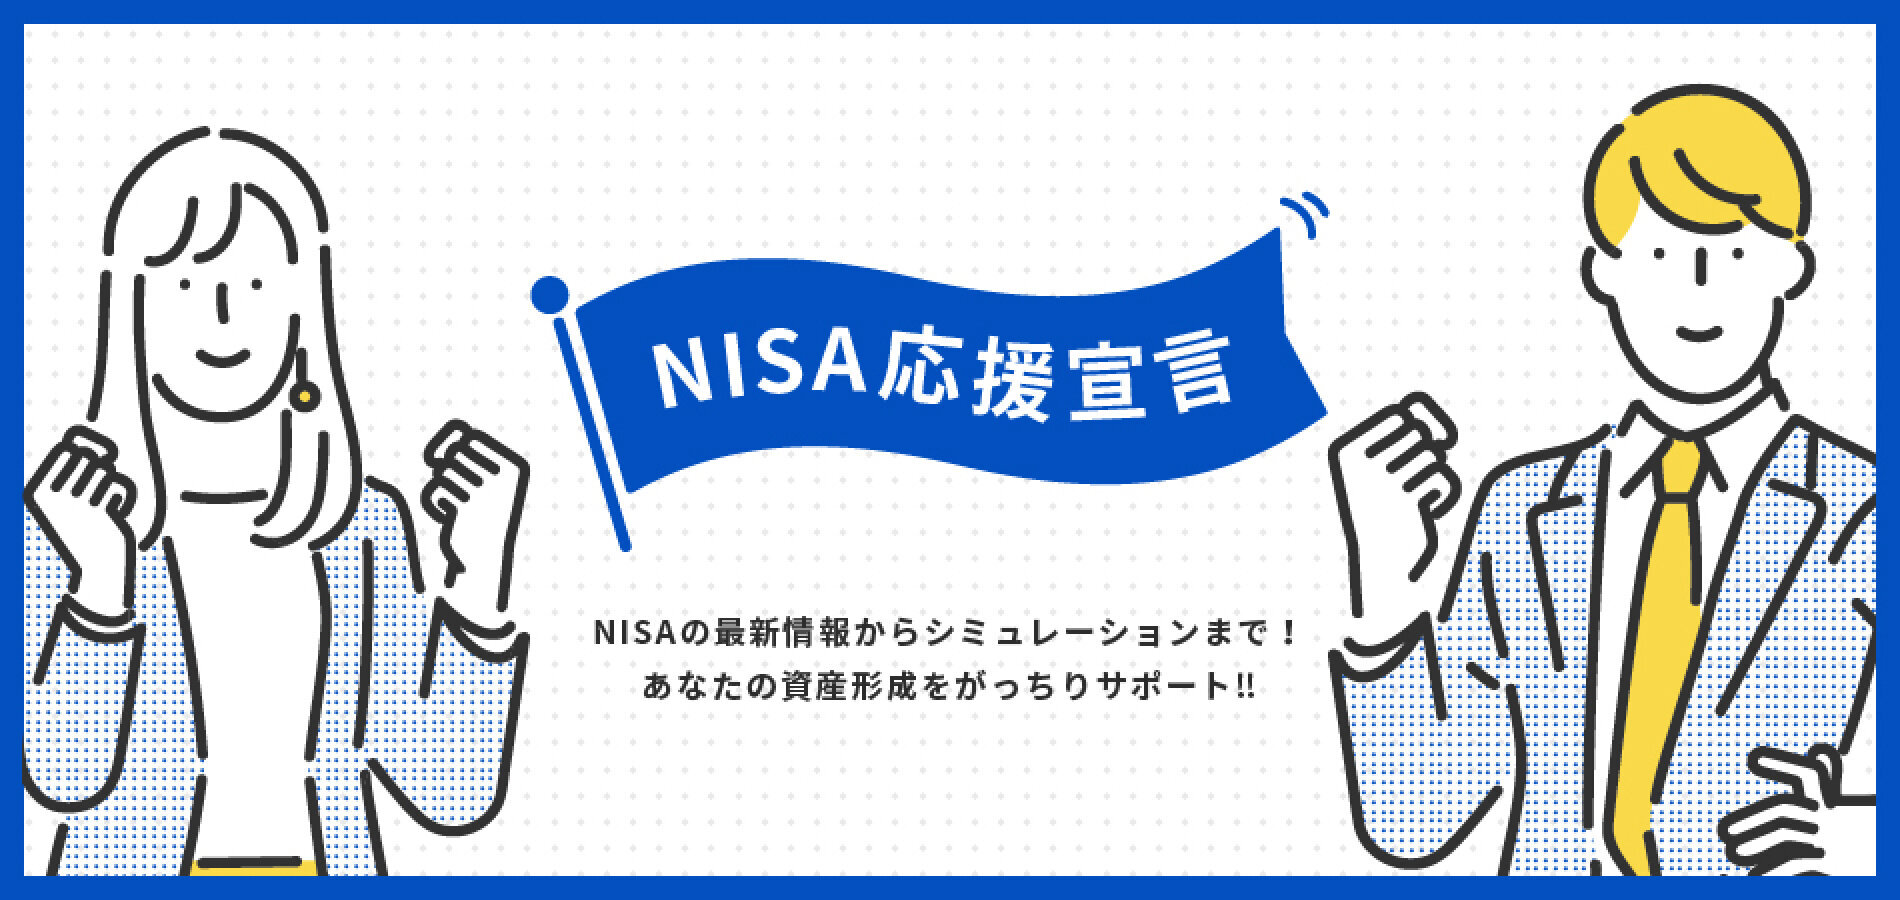 NISA応援宣言 NISAの最新情報からシュミレーションまで！あなたの資産形成をがっちりサポート!!